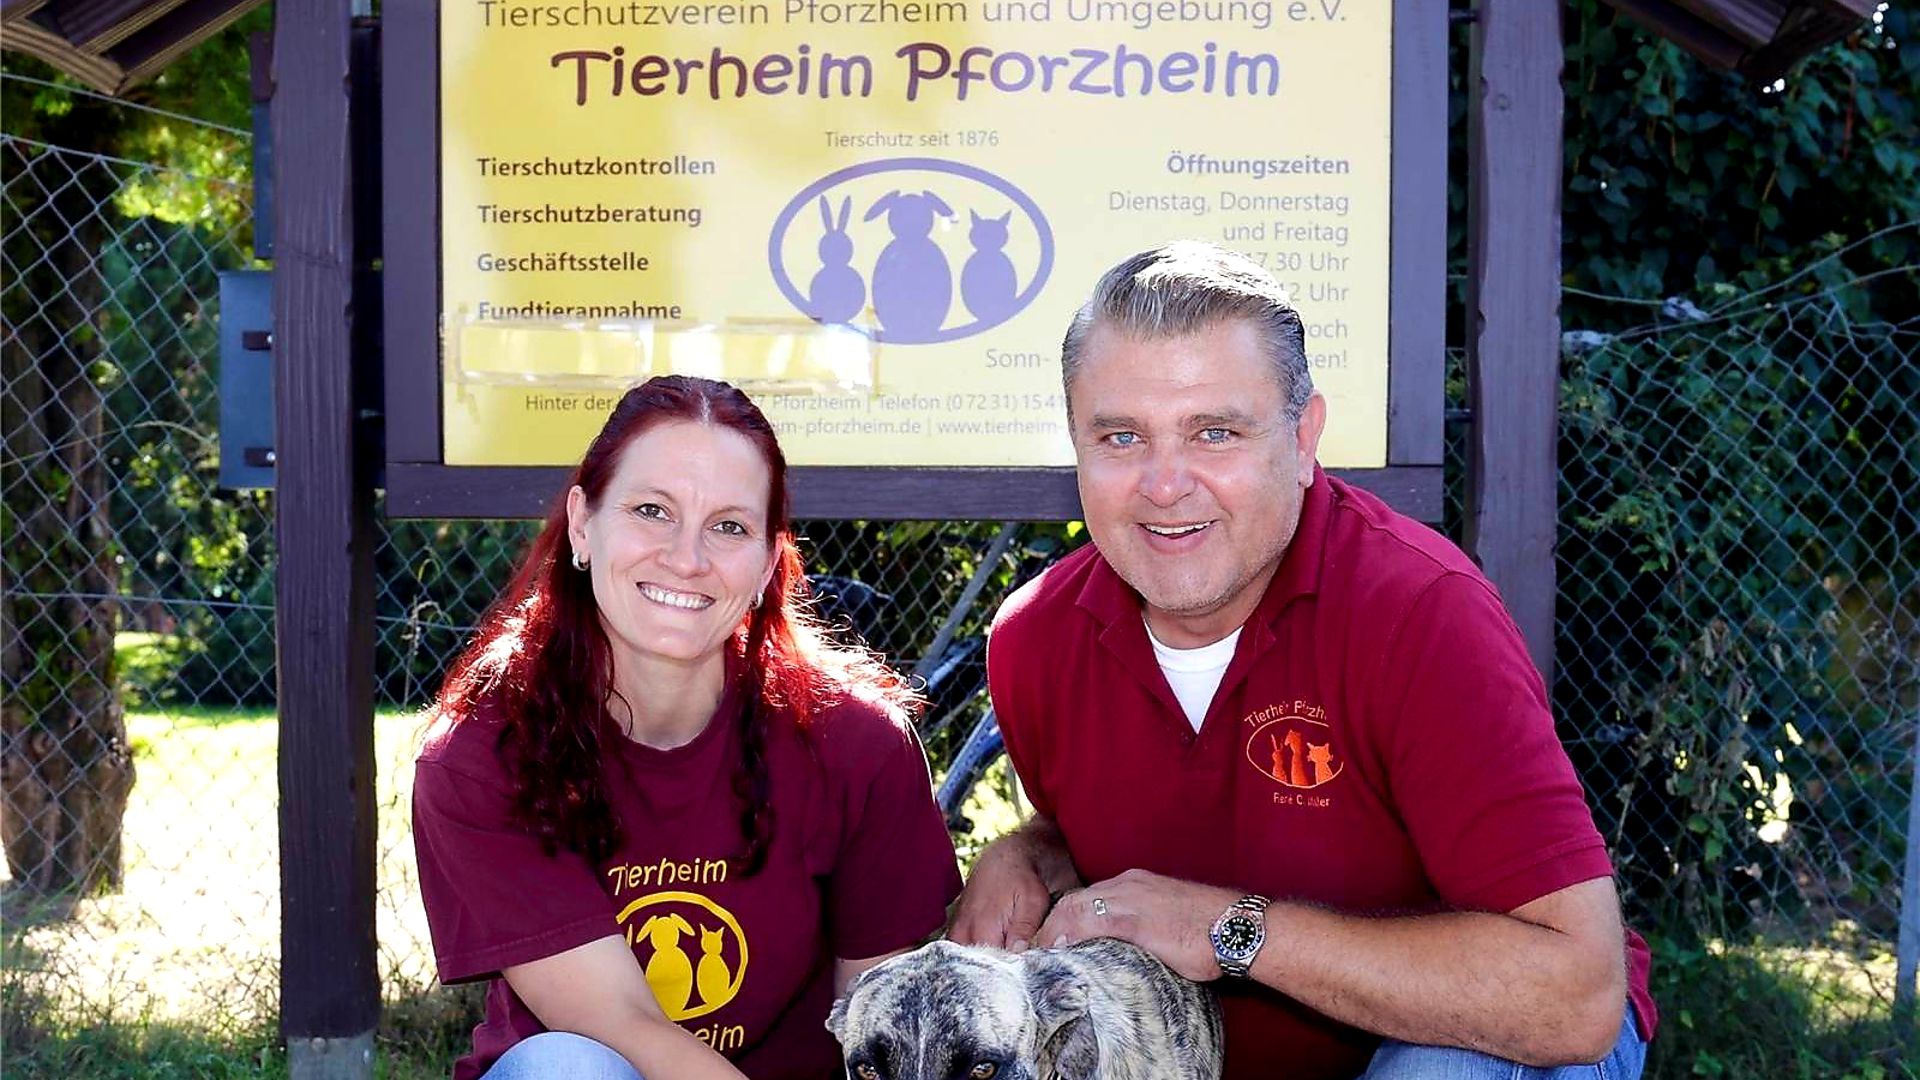 Die Pforzheimer Tierheimleiterin Kristin Hinze und 
Vorstandsvorsitzender René C. Maier-Stadtaus
 vom Tierschutzverein gemeinsam mit einem Hund vor dem Schild des Tierheims.